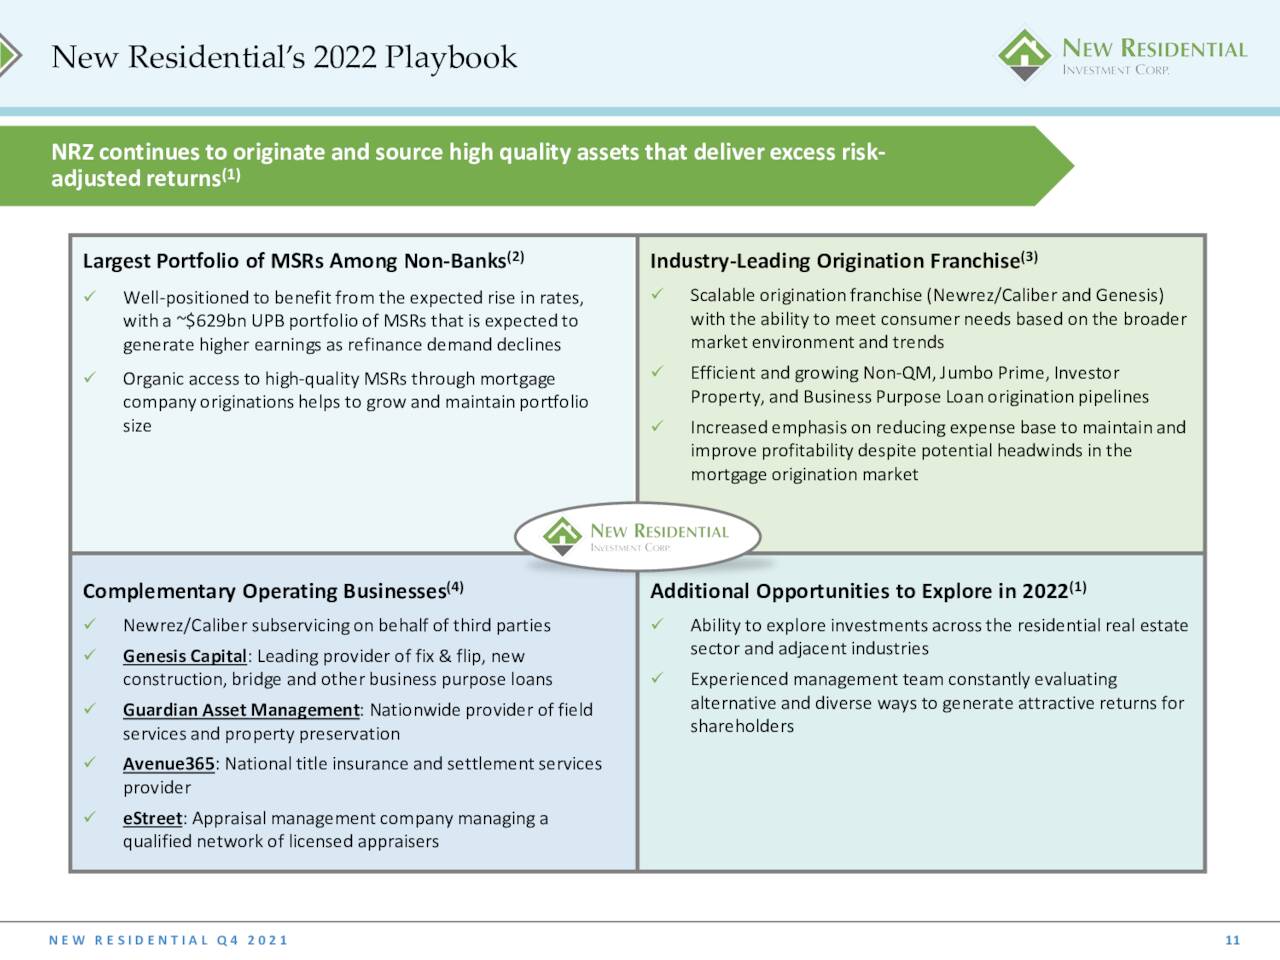 NRZ - 2022 Strategy